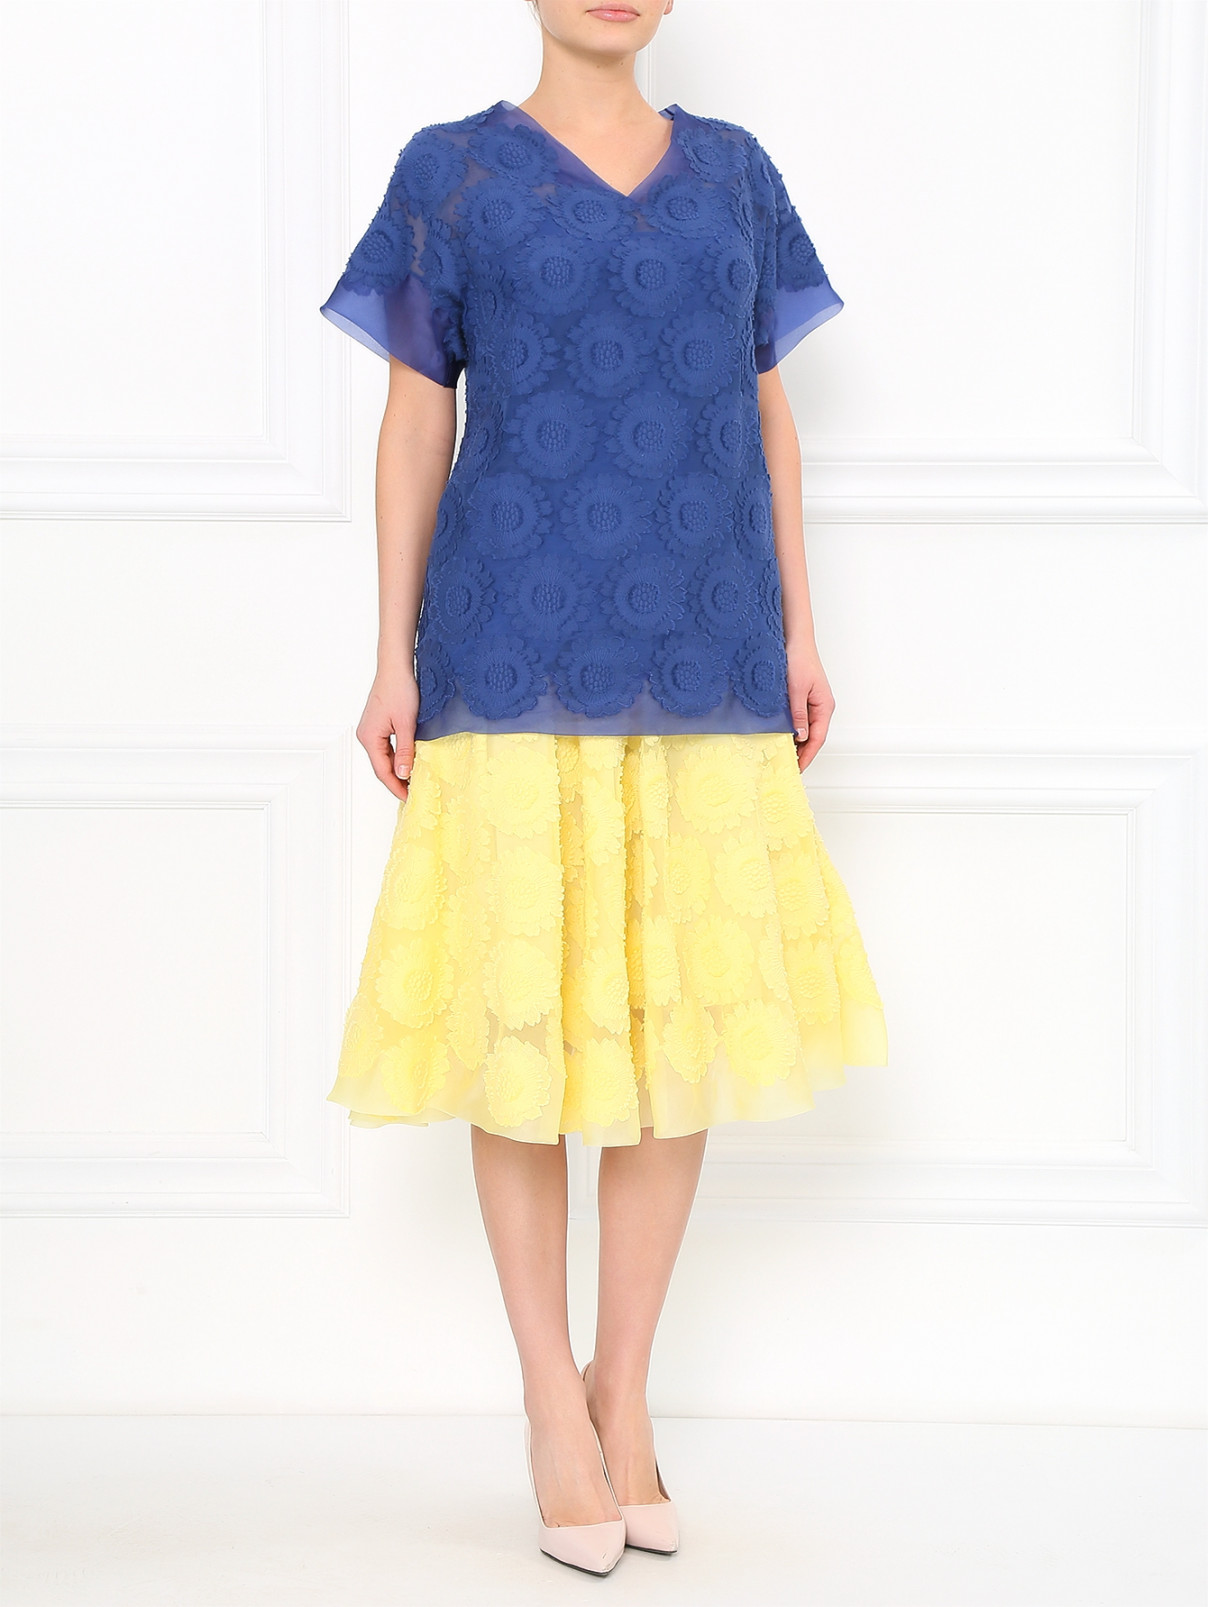 Блуза с вышивкой из шелка Ermanno Scervino  –  Модель Общий вид  – Цвет:  Синий